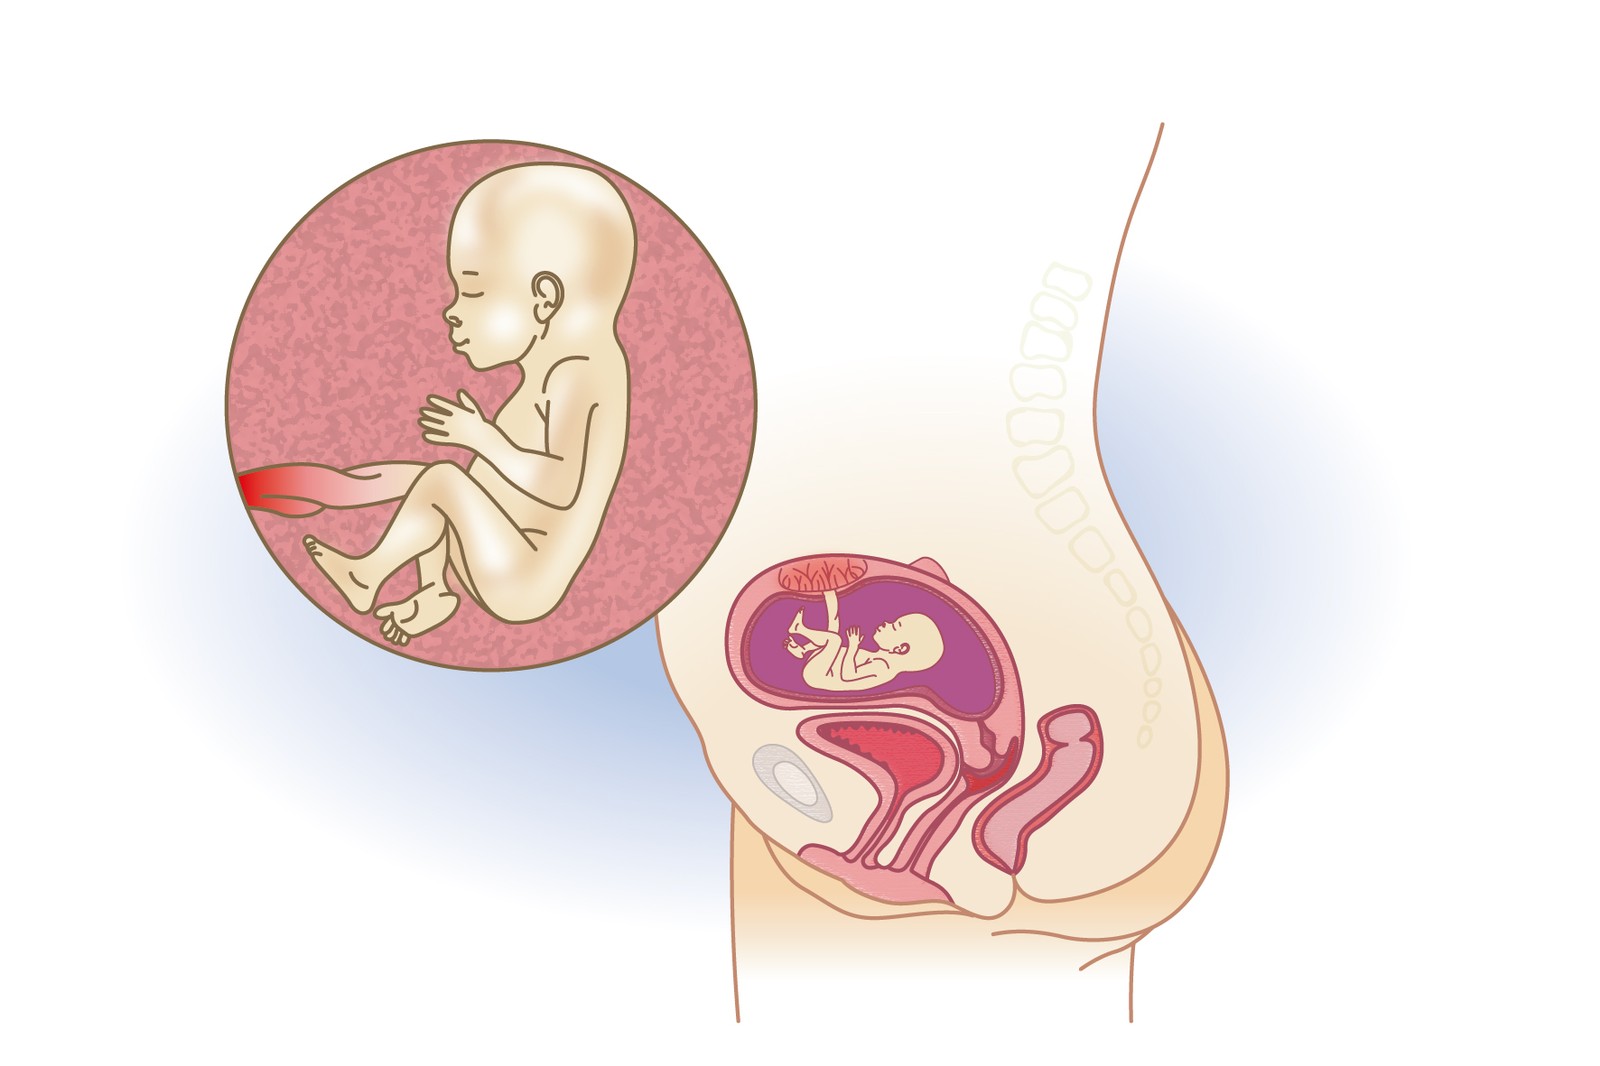 Plod v 18. týdnu těhotenství